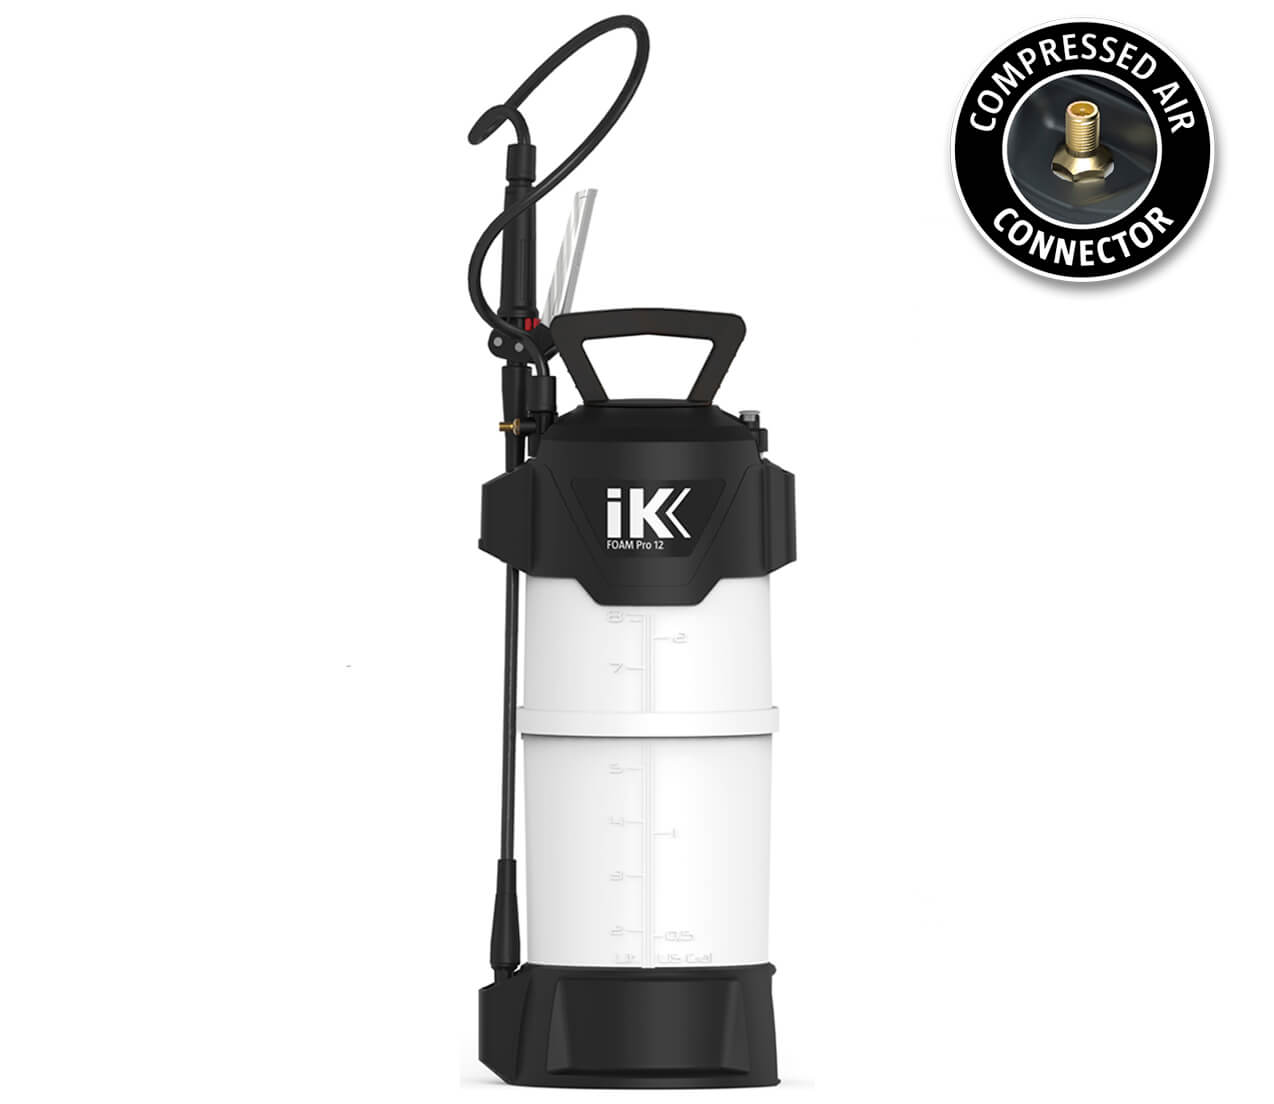 IK FOAM Pro 12 Sprayer